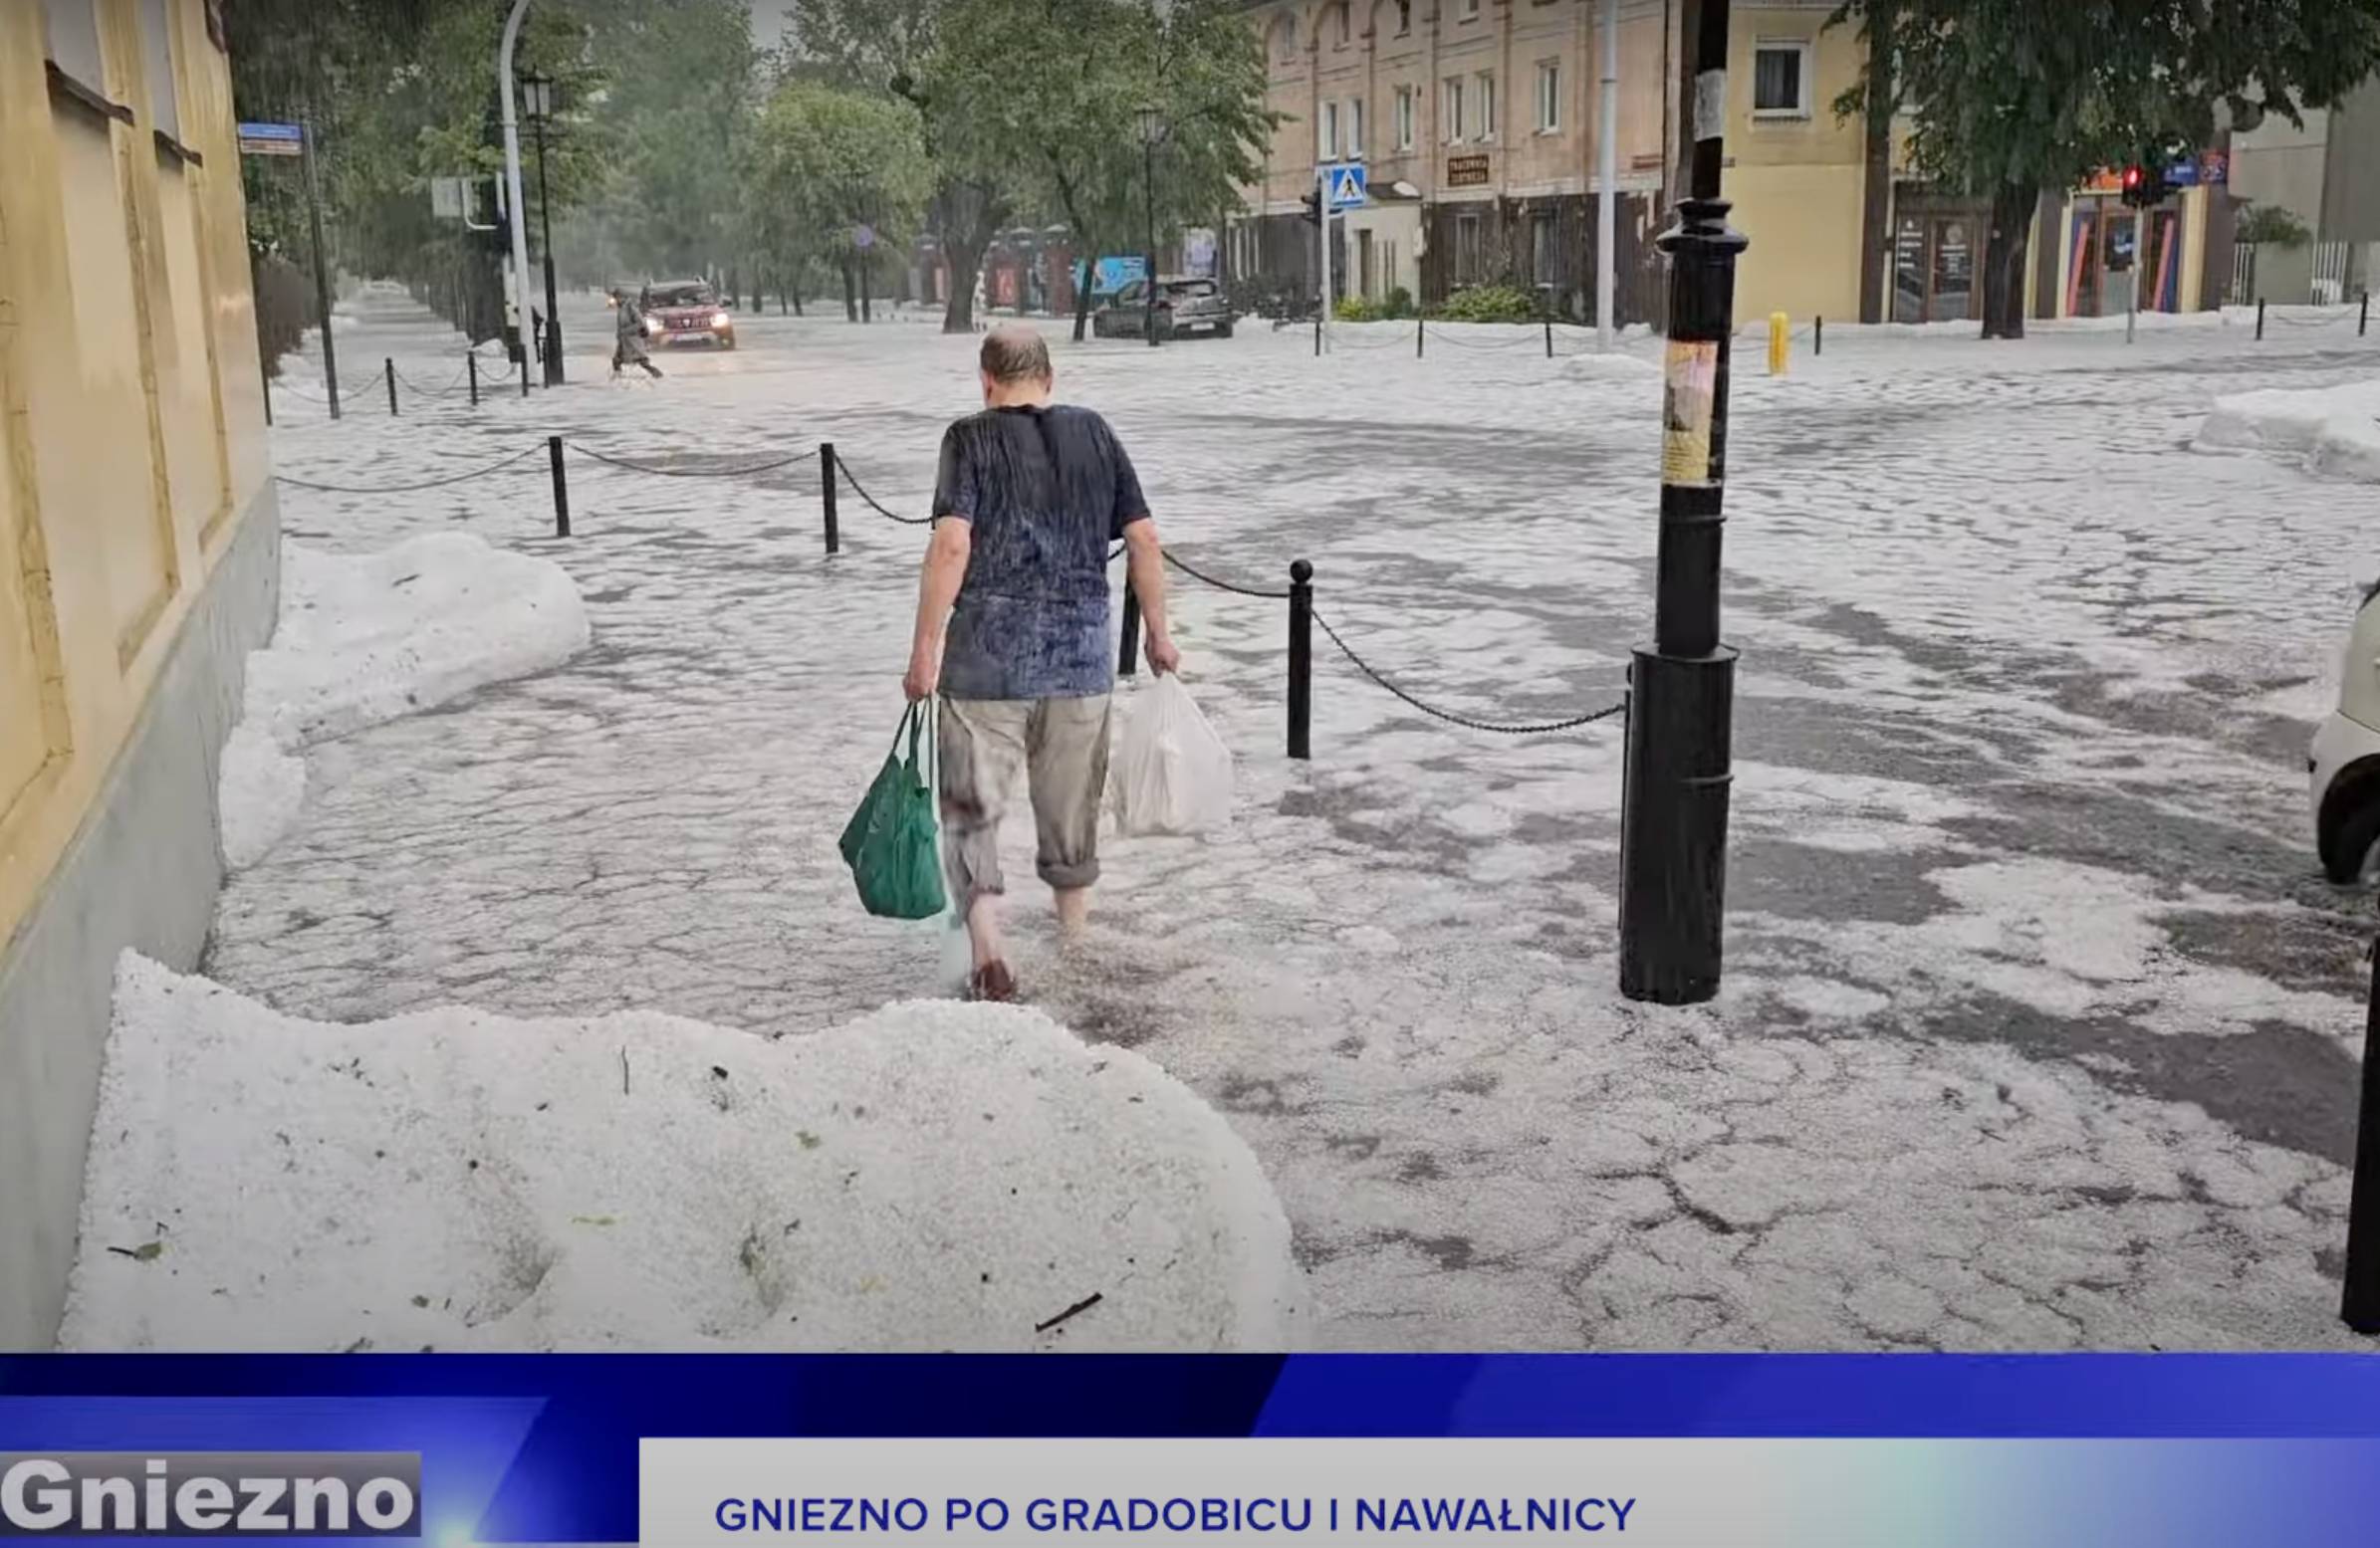 Mężczyzna brnie przez ulicę zalaną deszczem i gradem. Fragment nagrania od TV Gniezno.